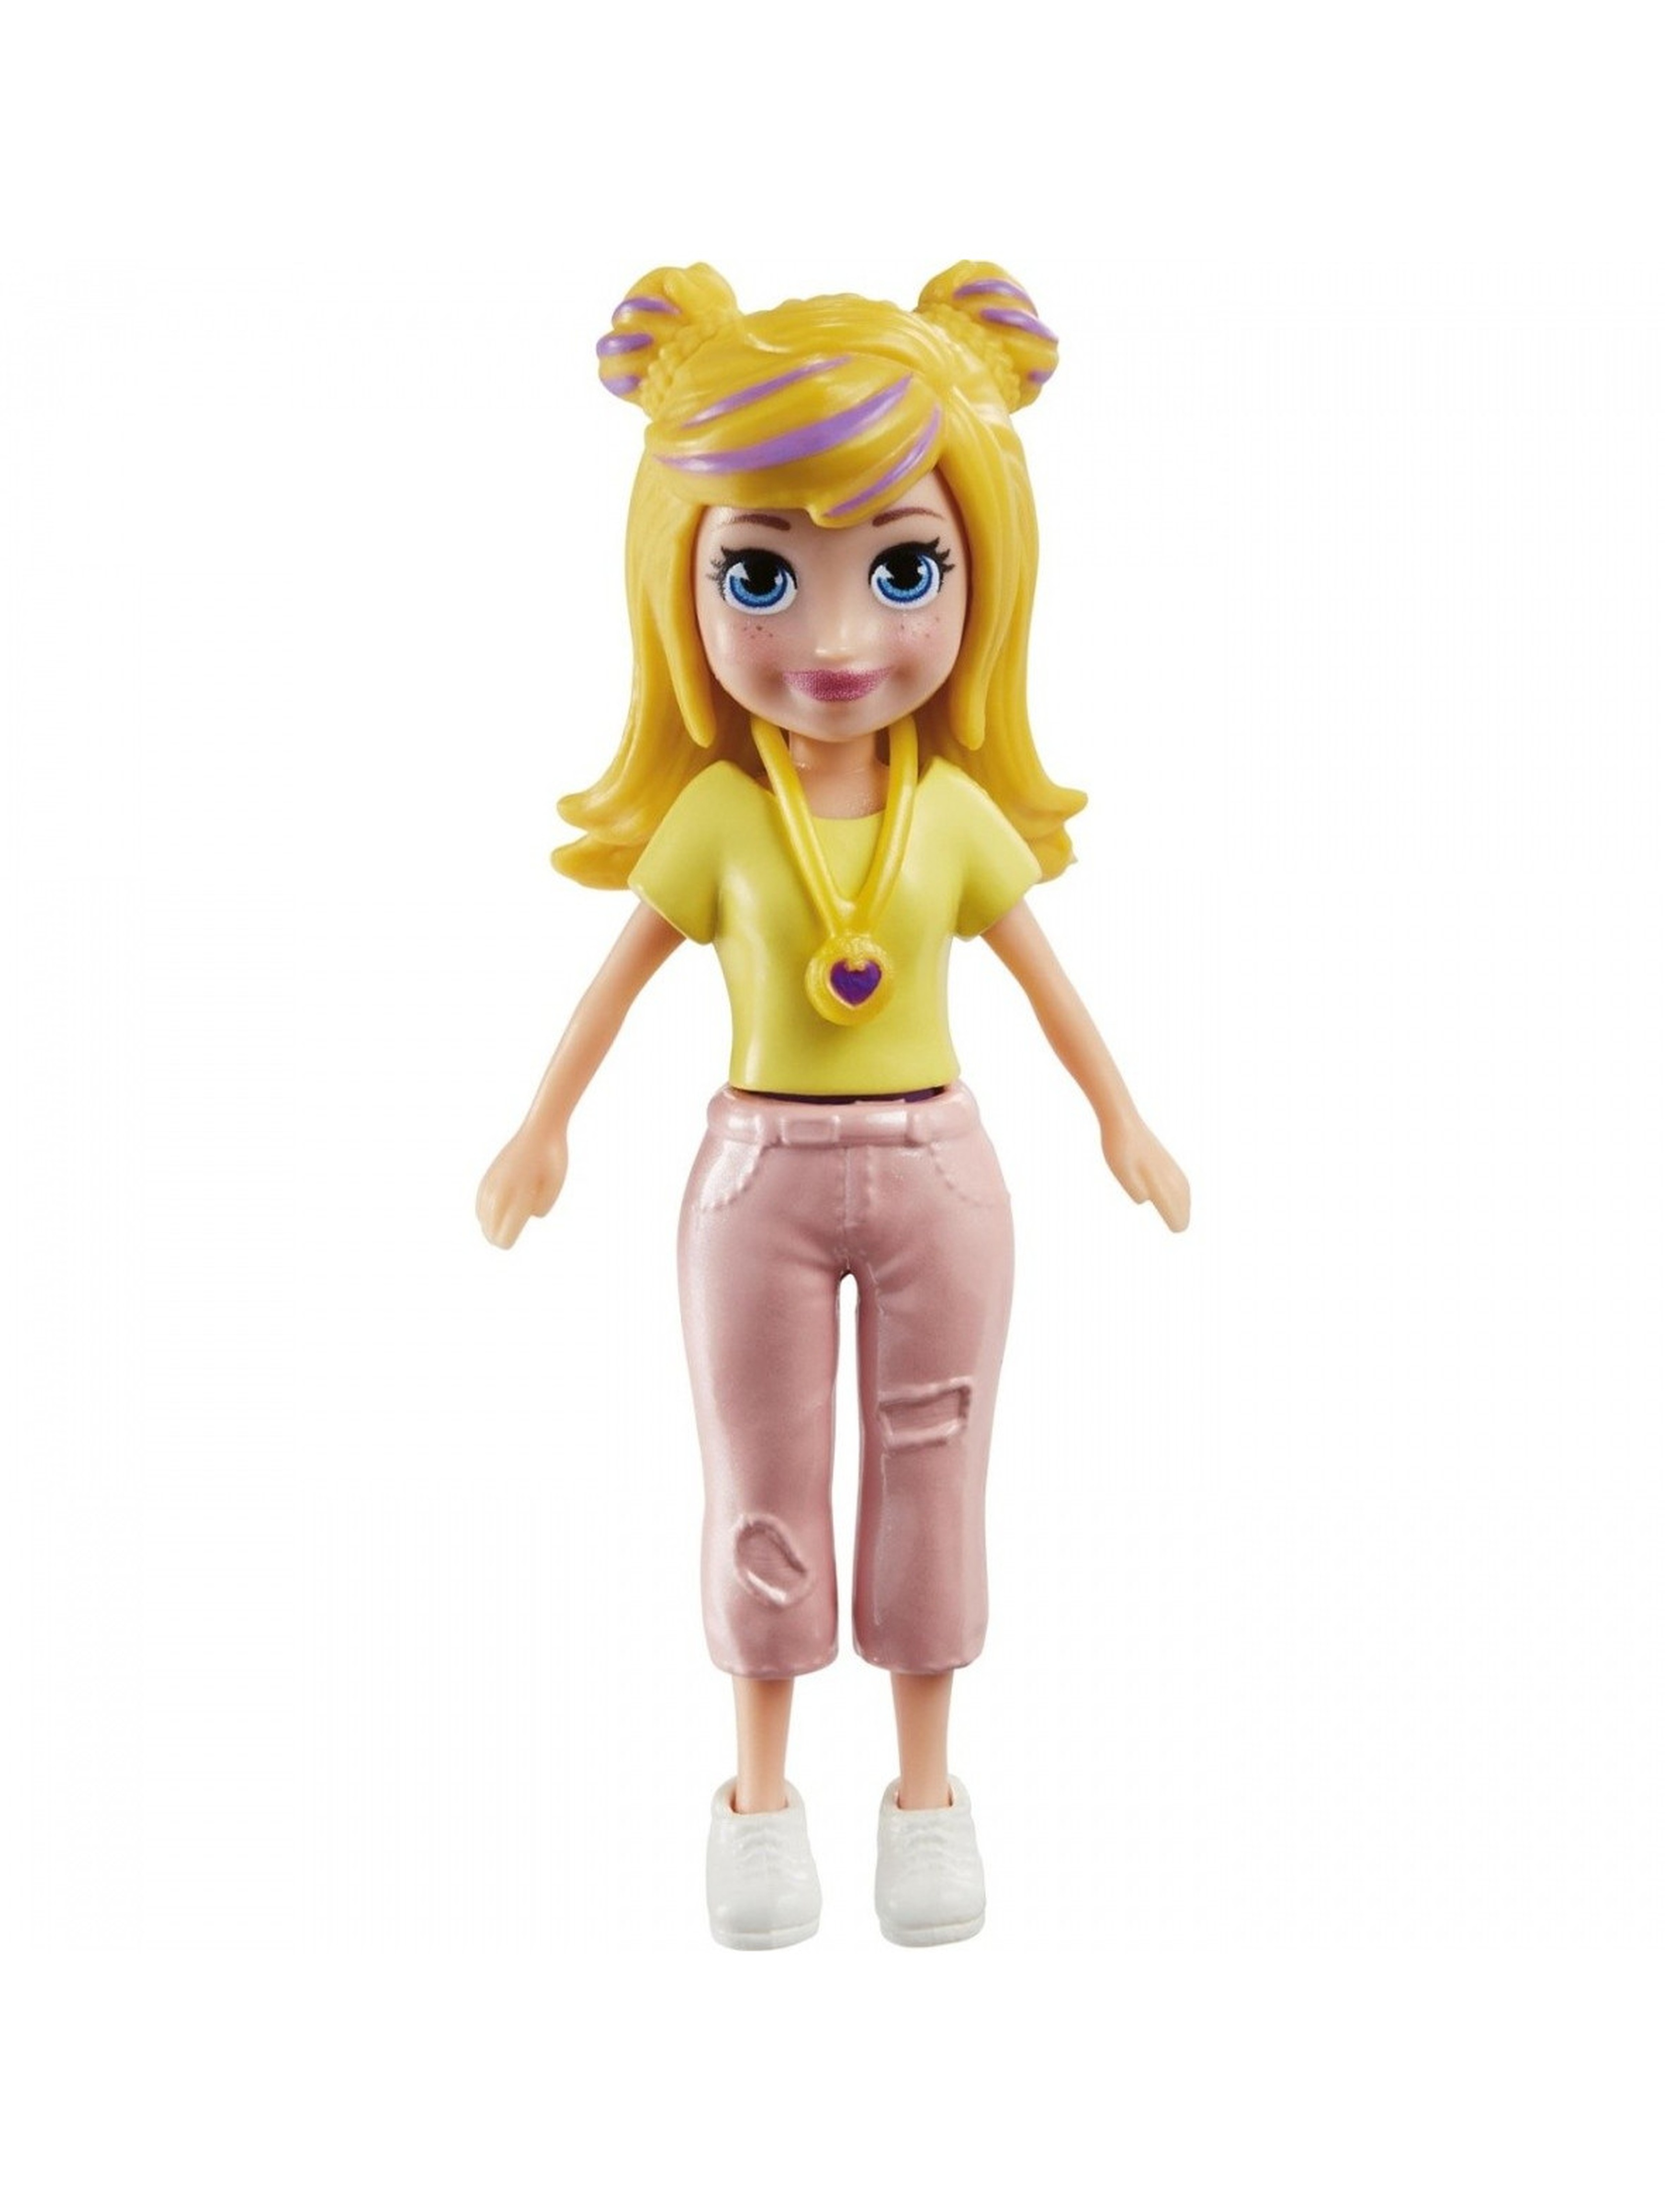 Figurka Polly Pocket z akcesoriami- blond włosy